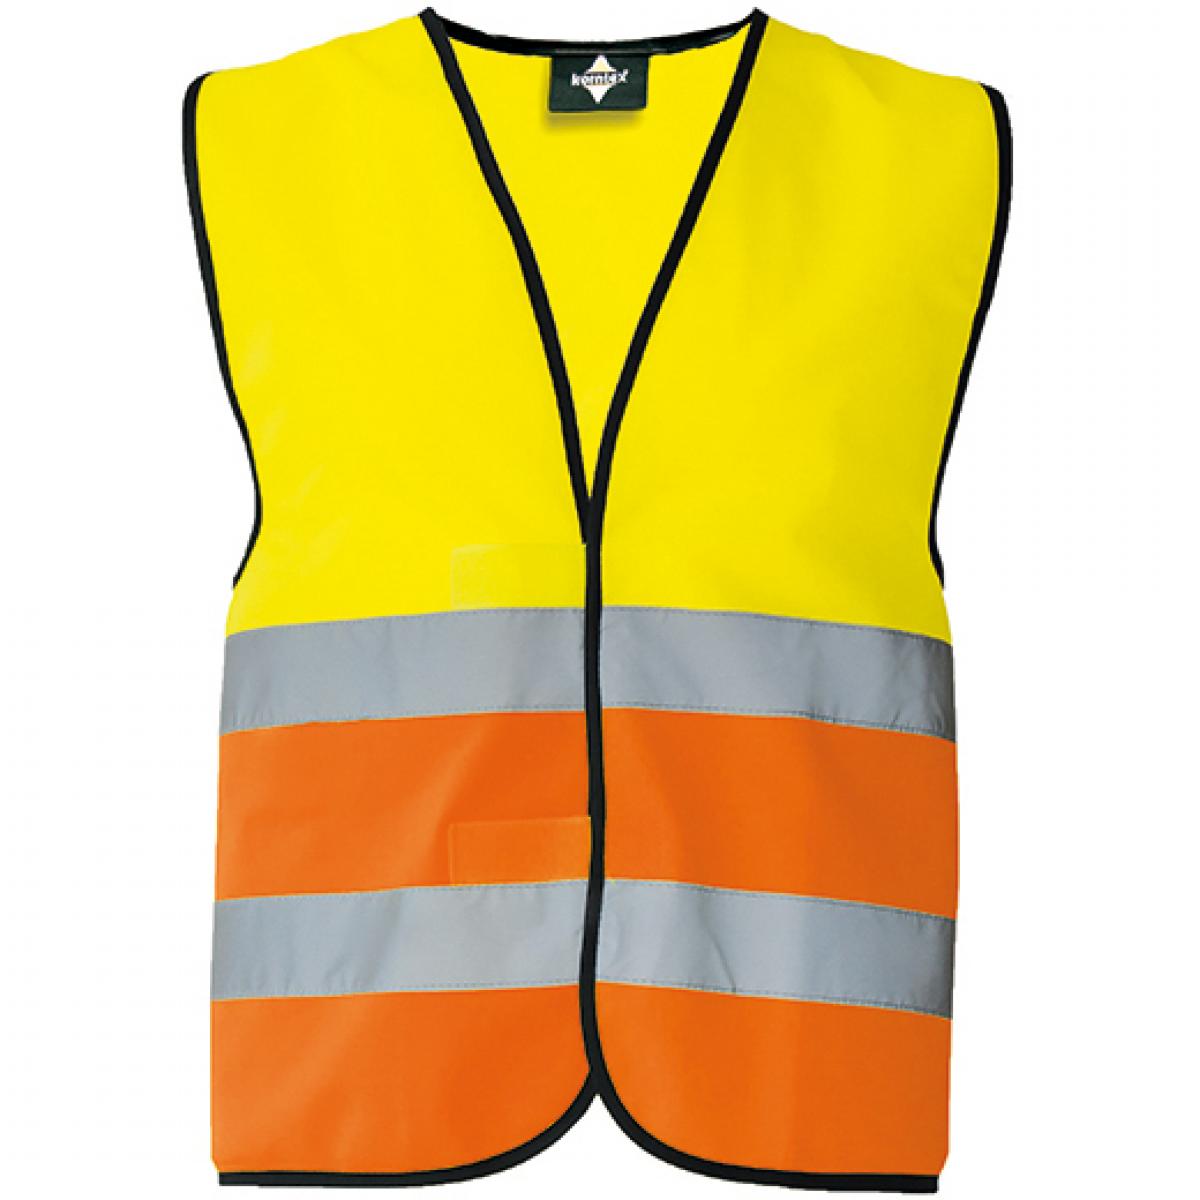 Hersteller: Korntex Herstellernummer: KXVW Artikelbezeichnung: Herren Warnweste EN ISO 20471 Farbe: Signal Yellow/Signal Orange